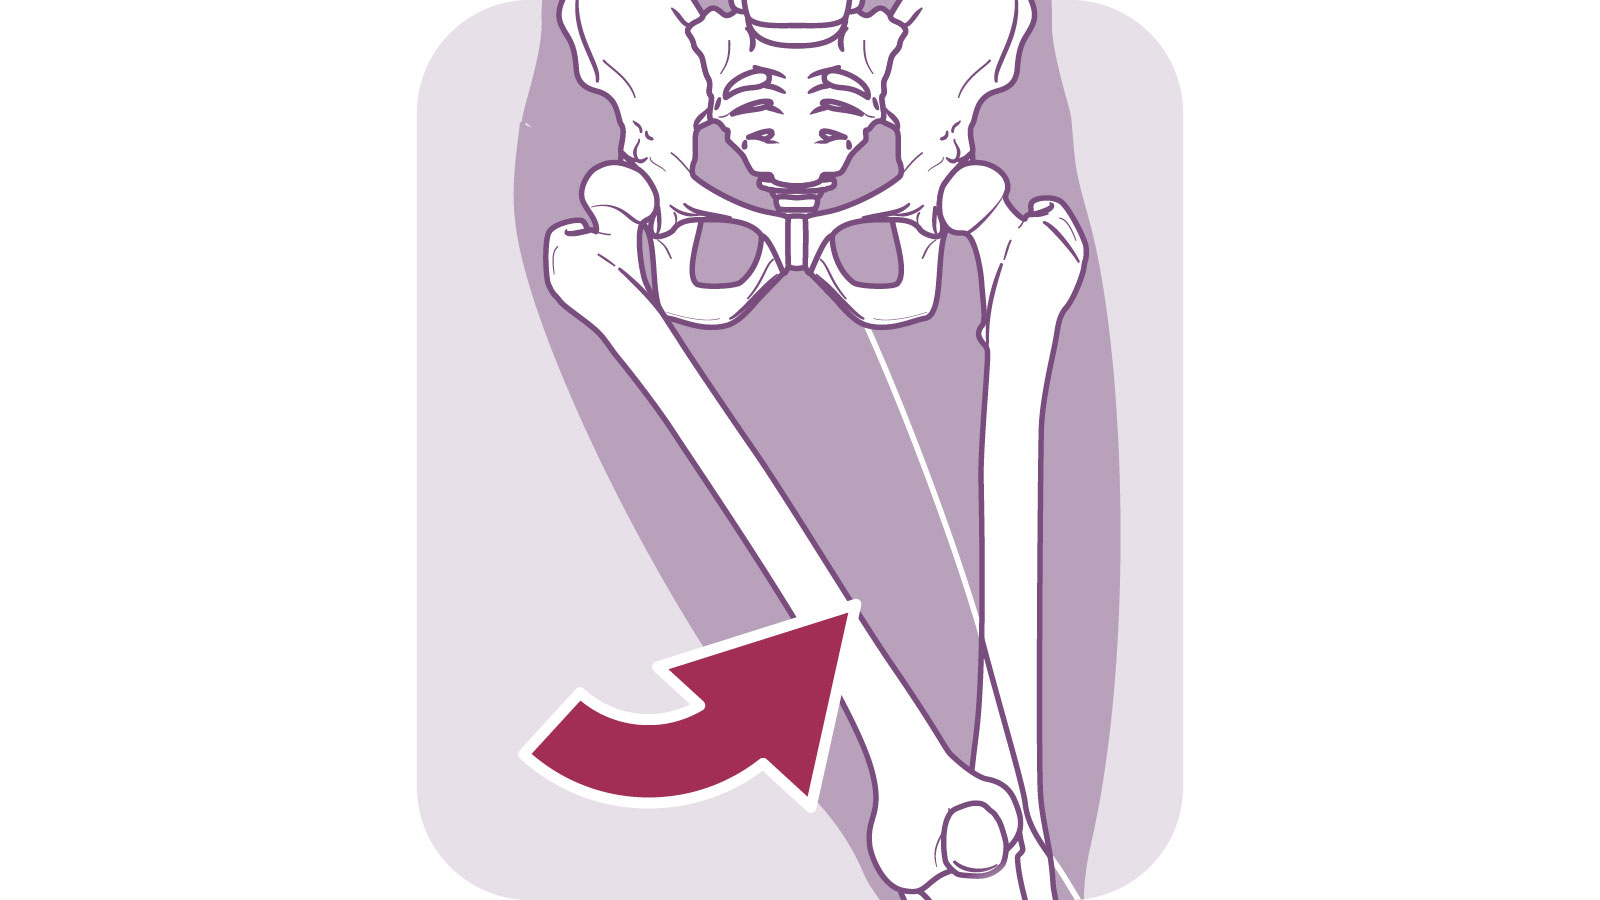 股関節の動きと役割 人体図